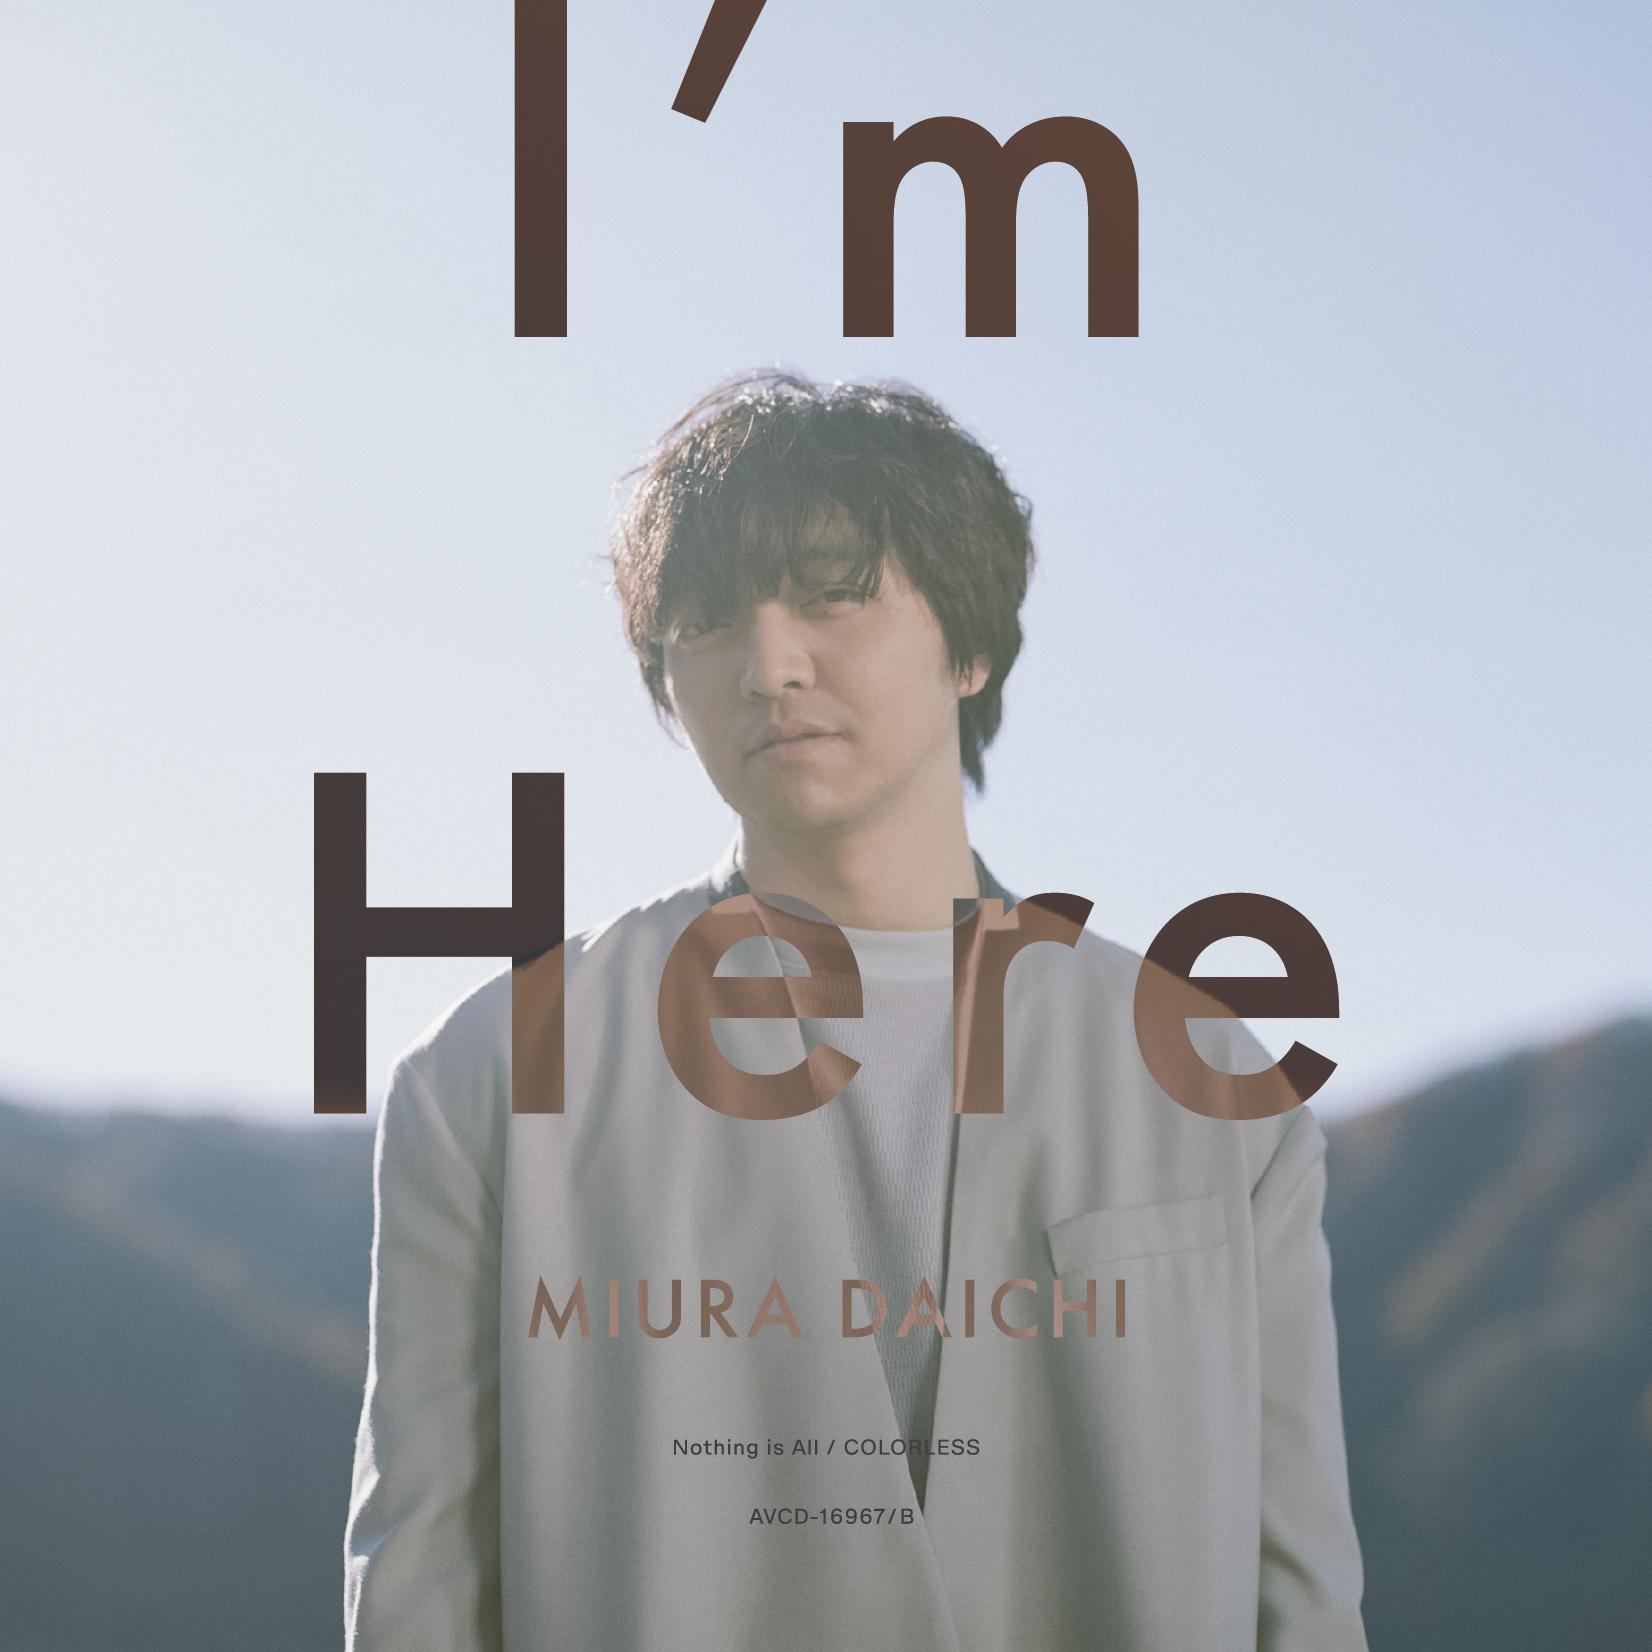 I'm Here歌词 歌手三浦大知-专辑I'm Here-单曲《I'm Here》LRC歌词下载